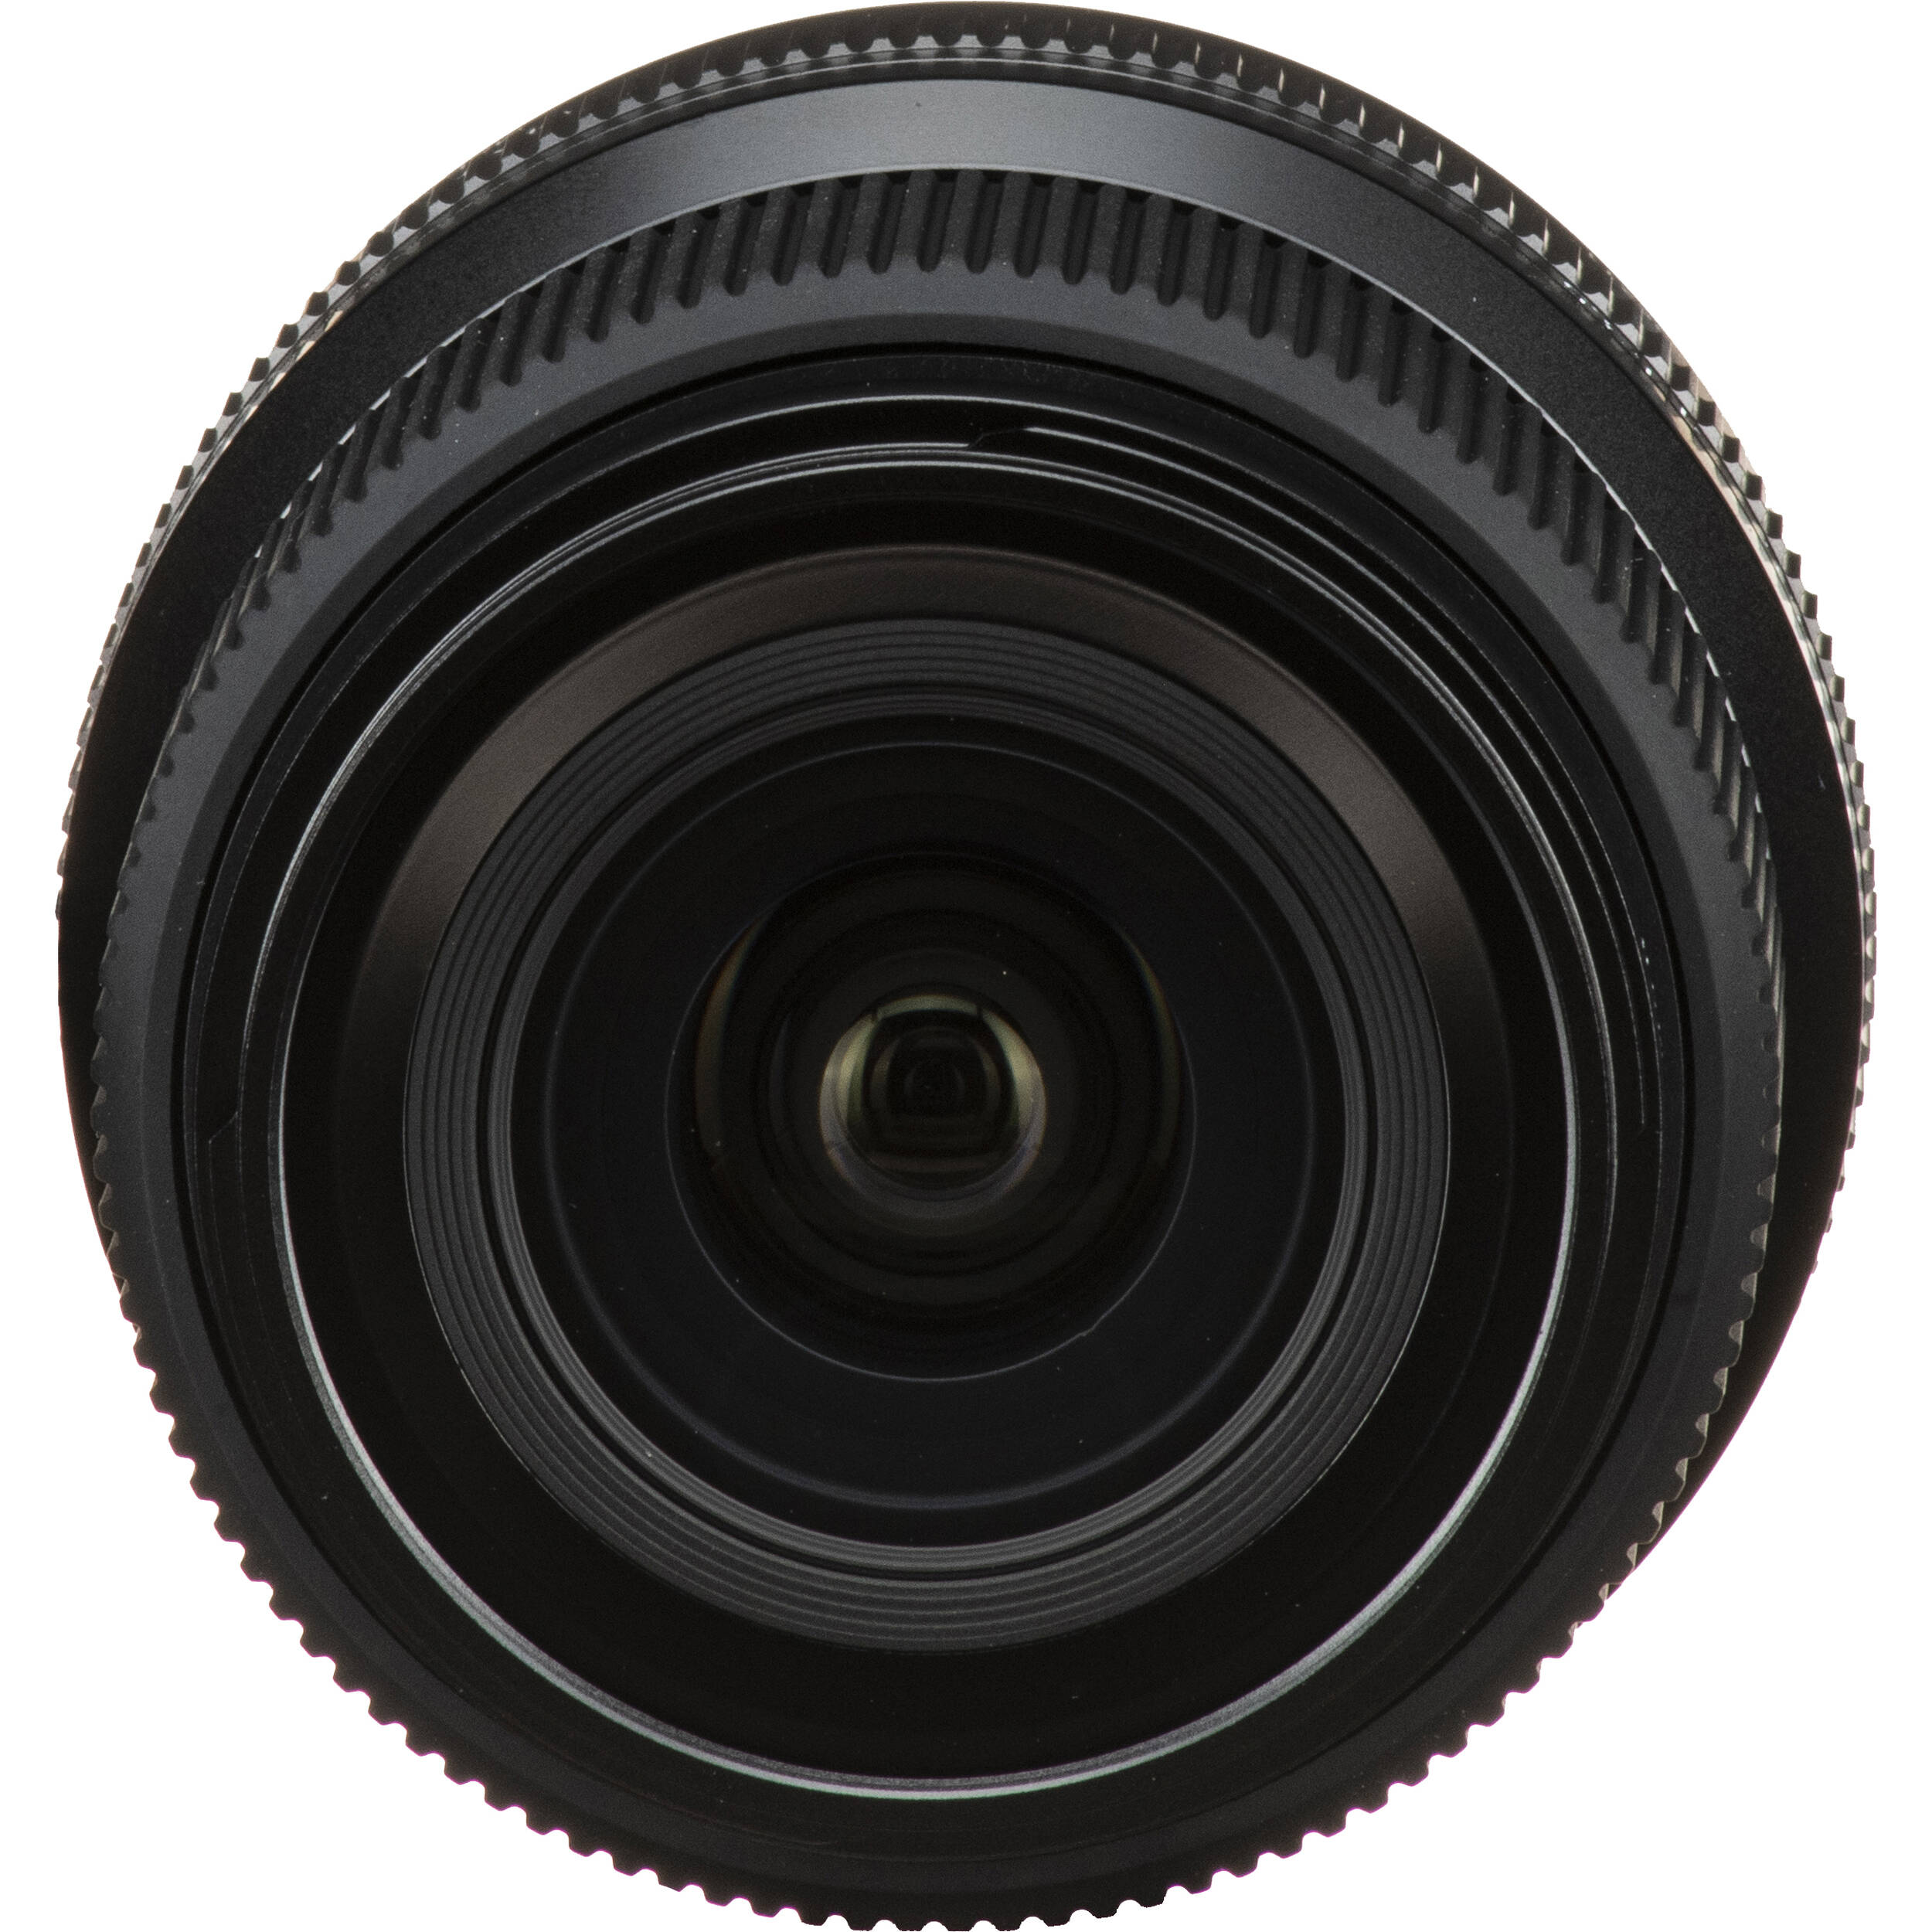 Fujifilm GF 30mm f/3.5 R WR